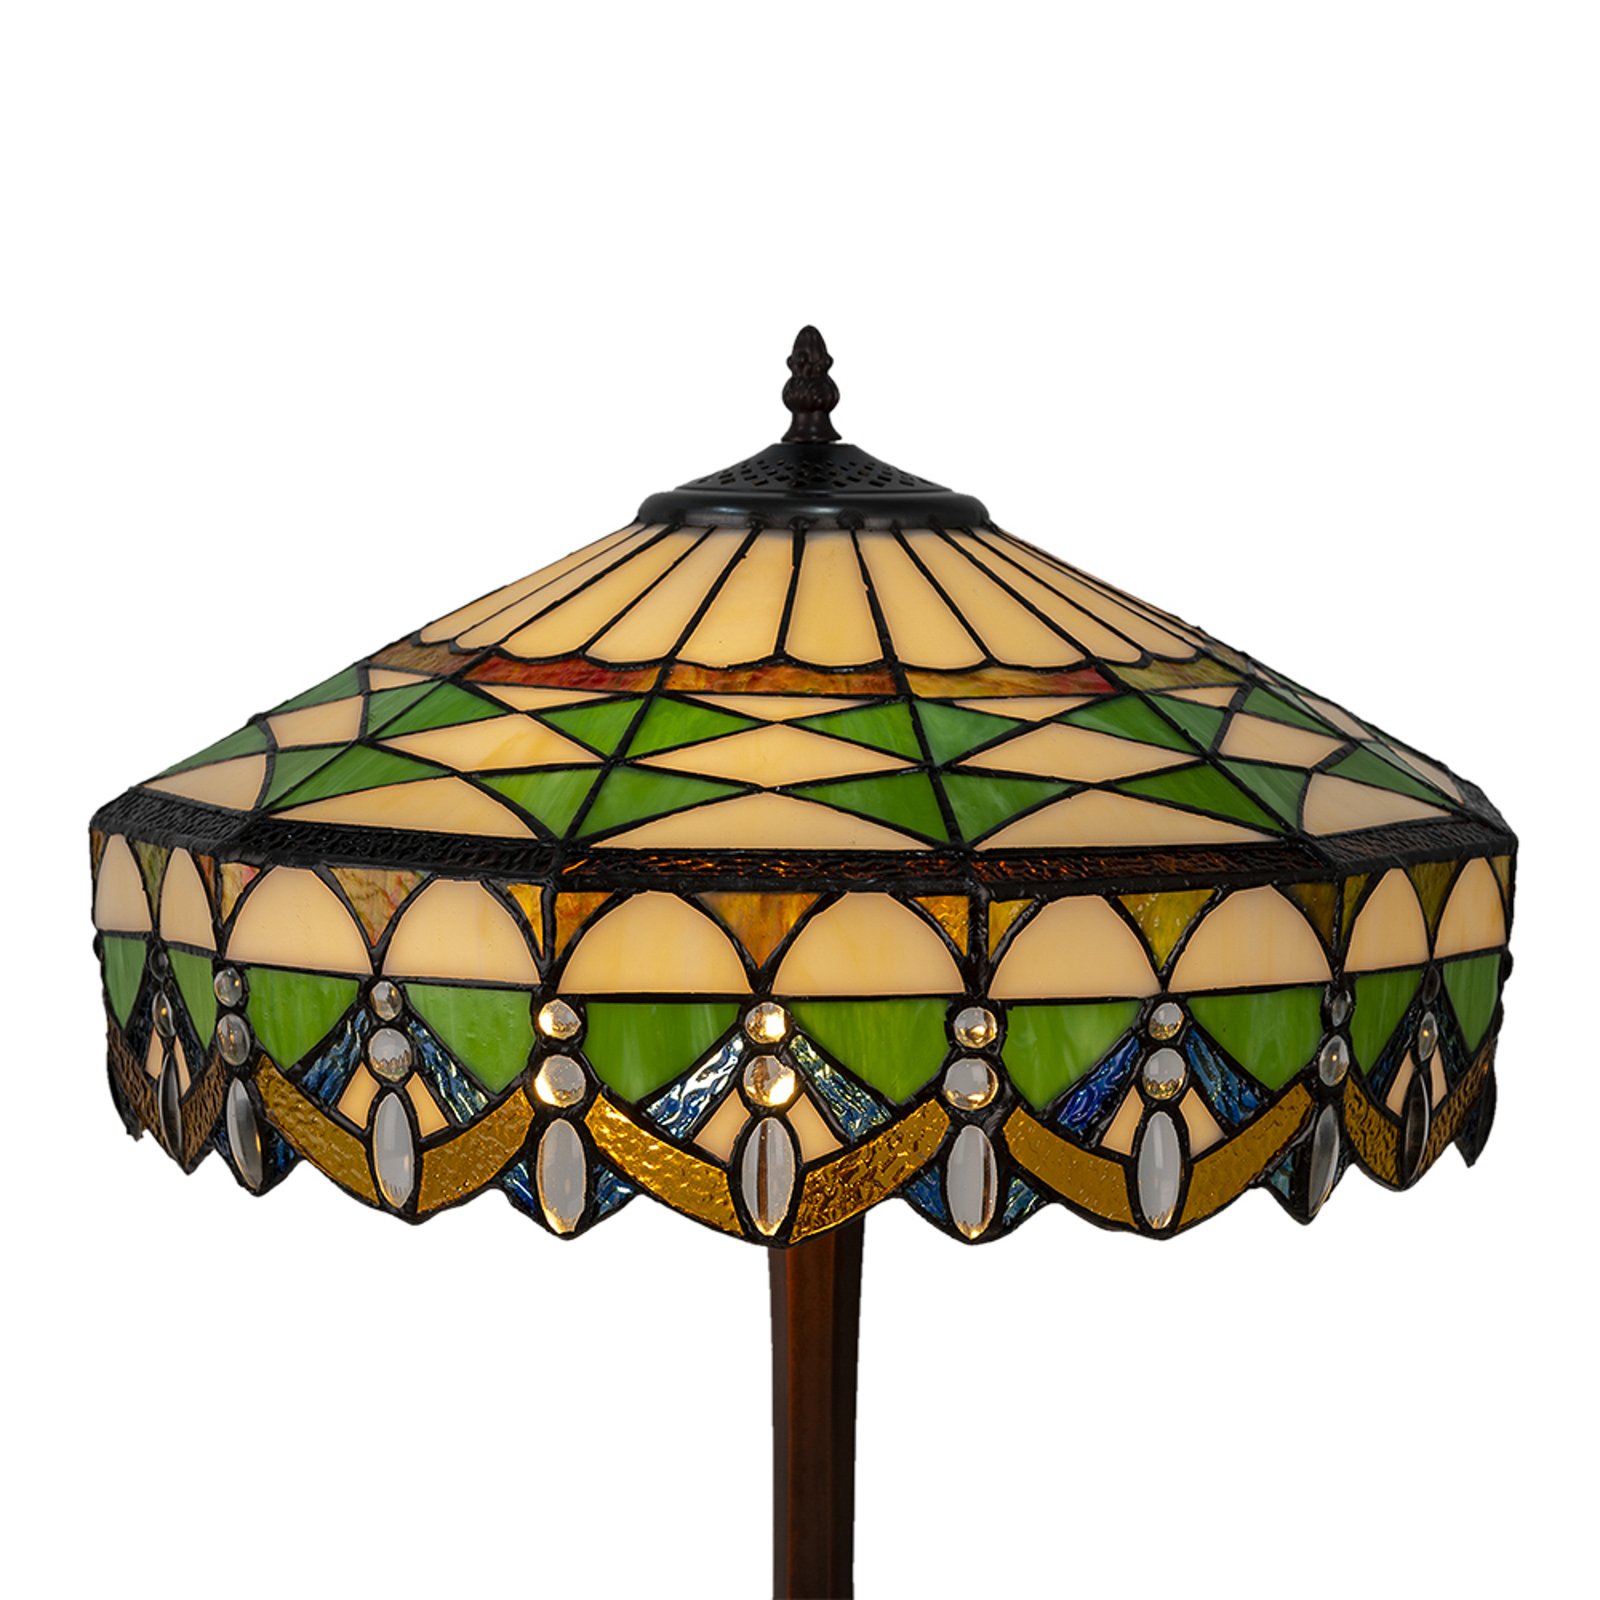 Pöytälamppu 5LL-6086 vihreä, tiffany-tyyliä